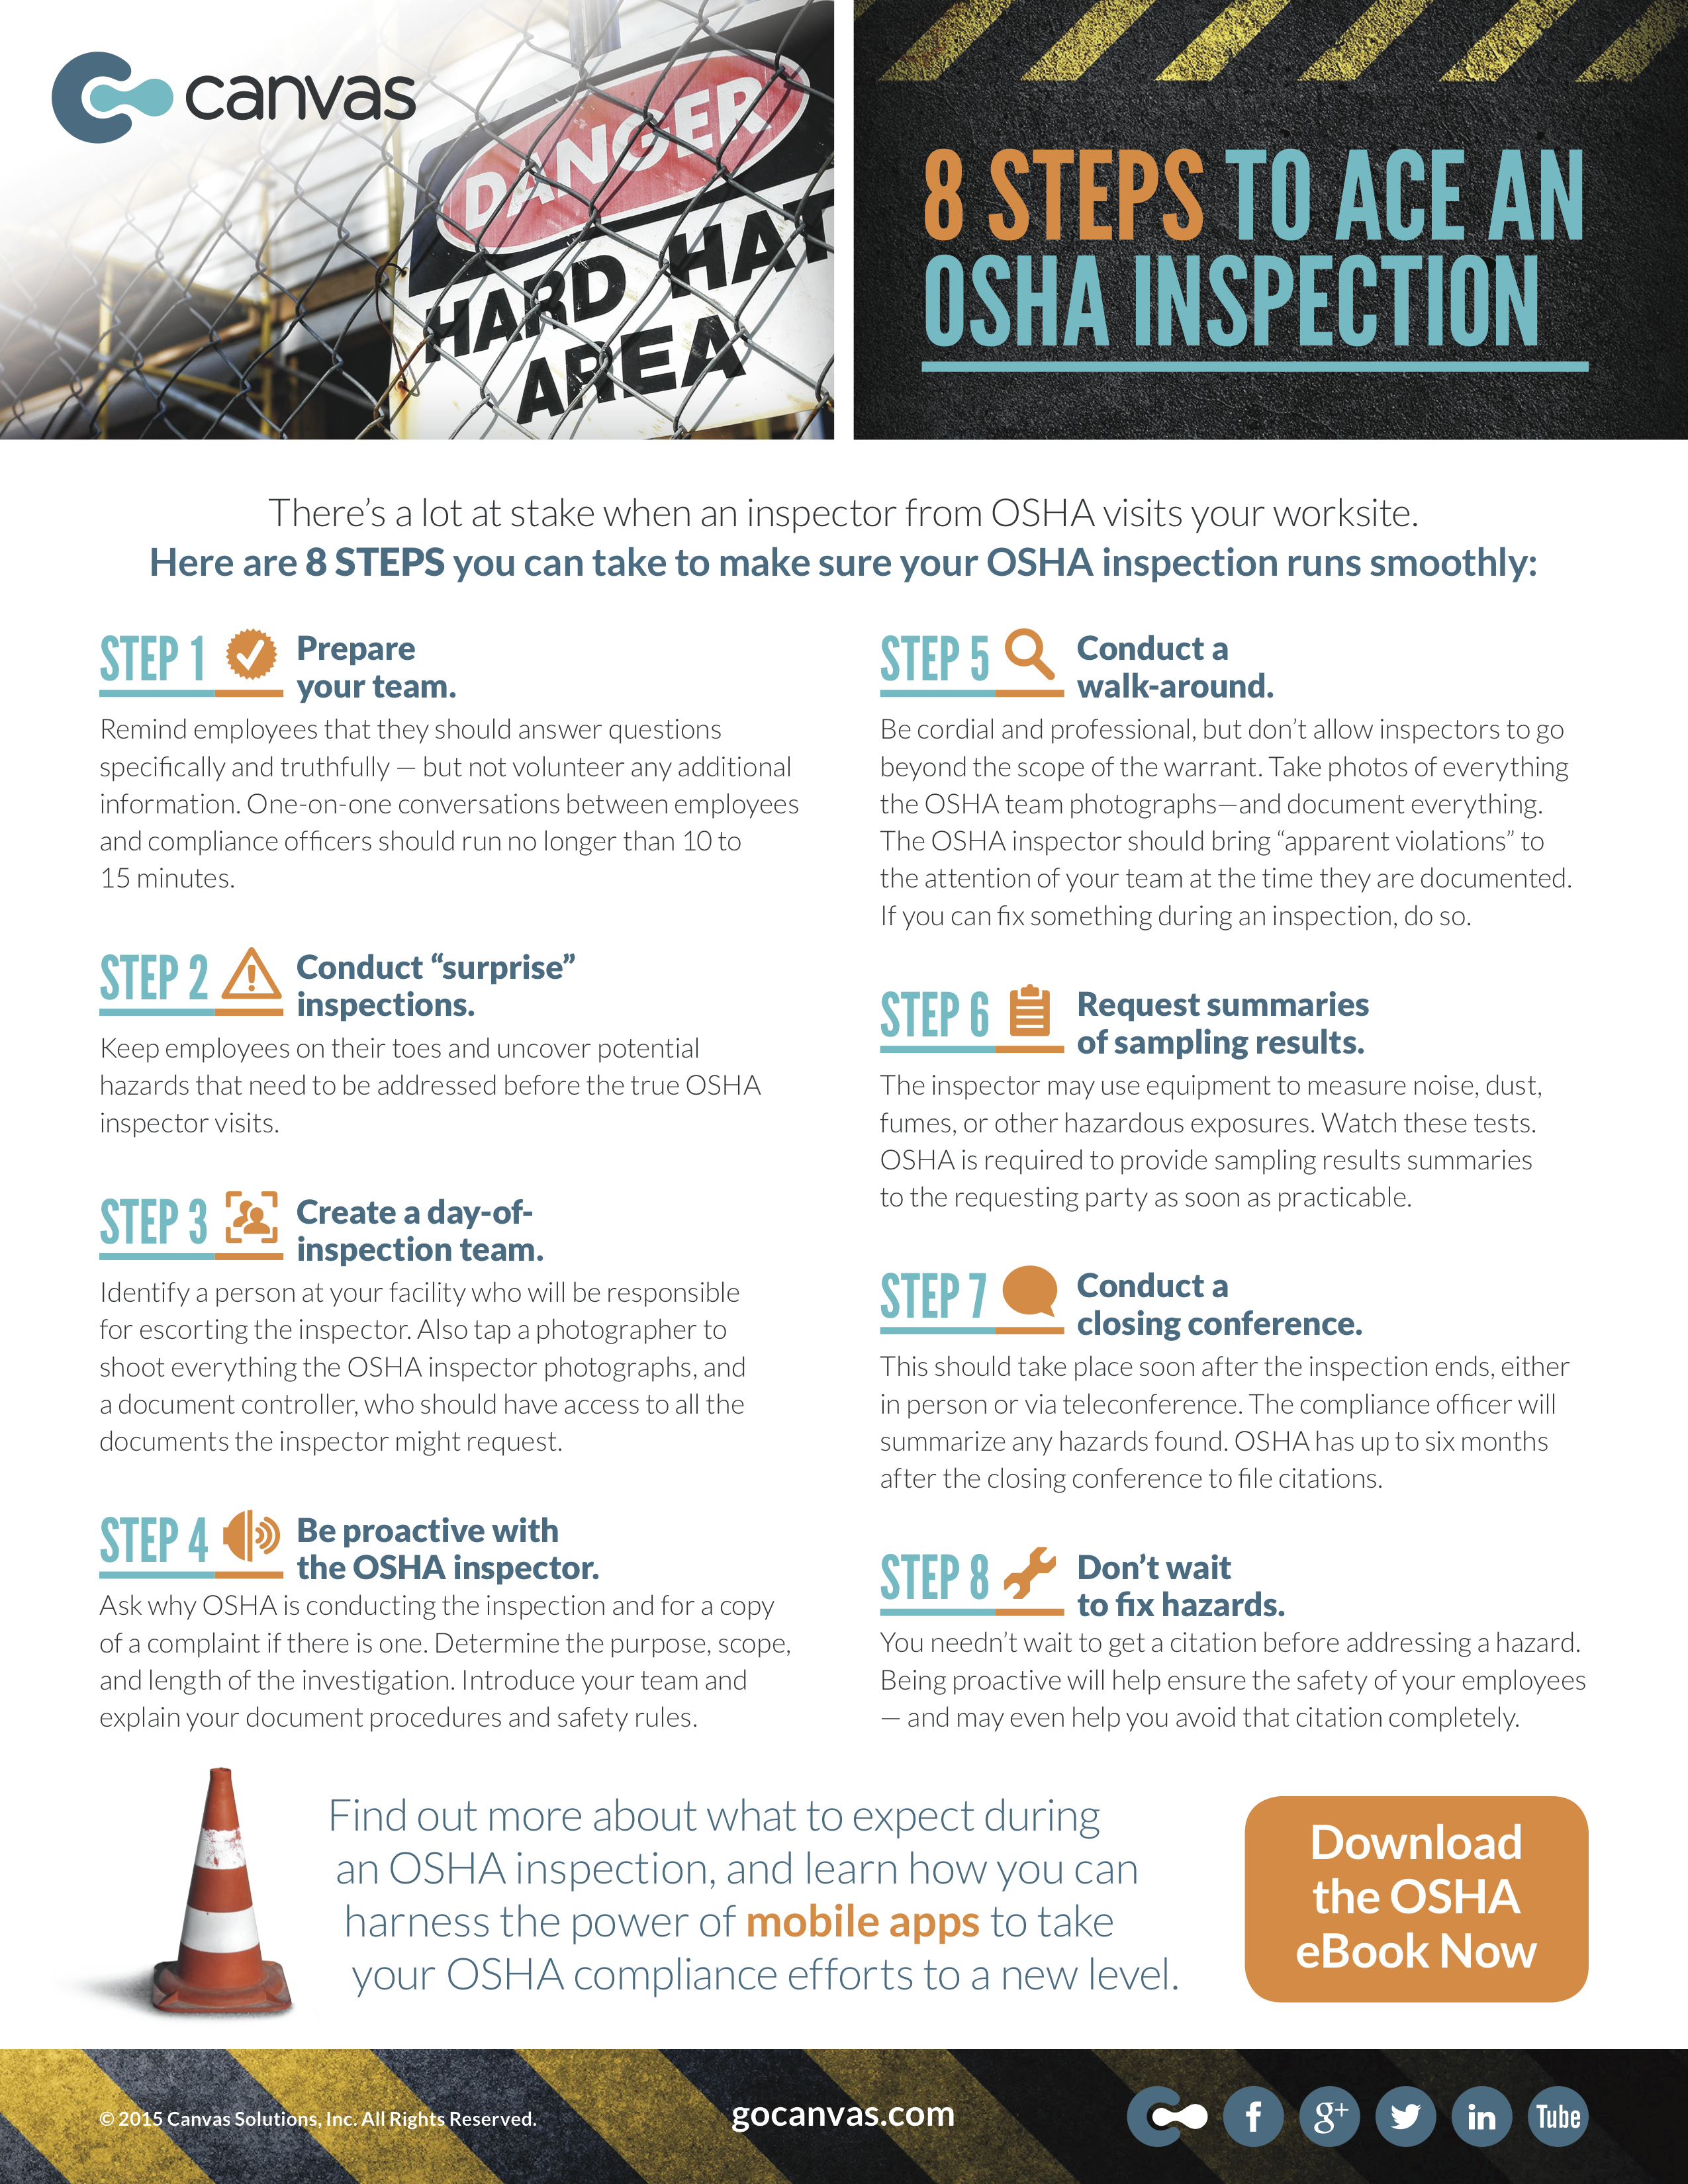 8 Steps to Ace an OSHA Inspection